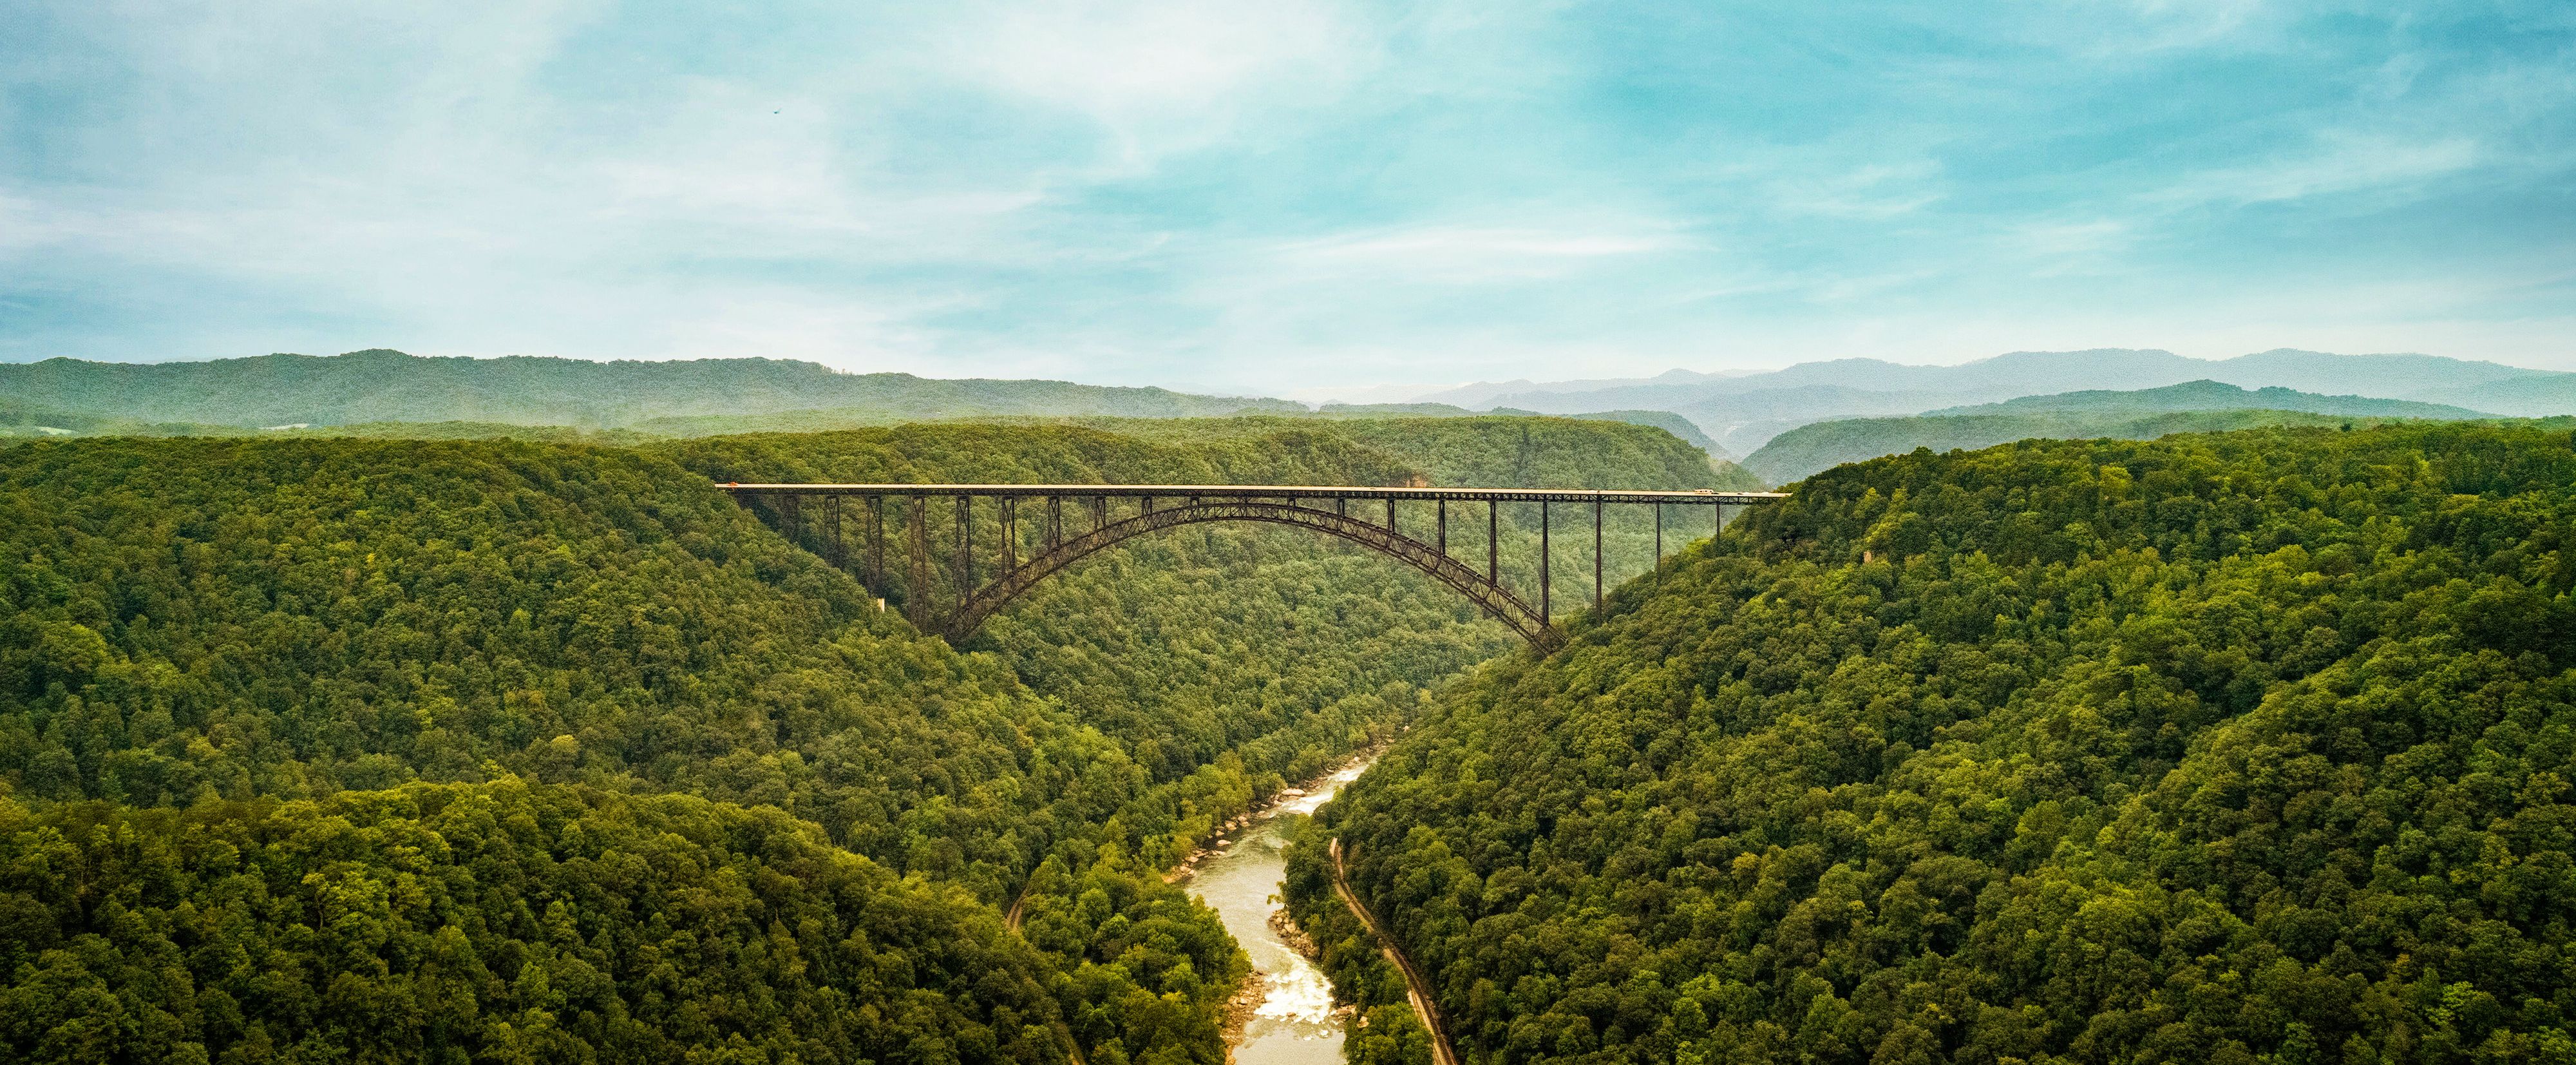 Die New River Gorge Bridge inmitten der bewaldeten Landschaft